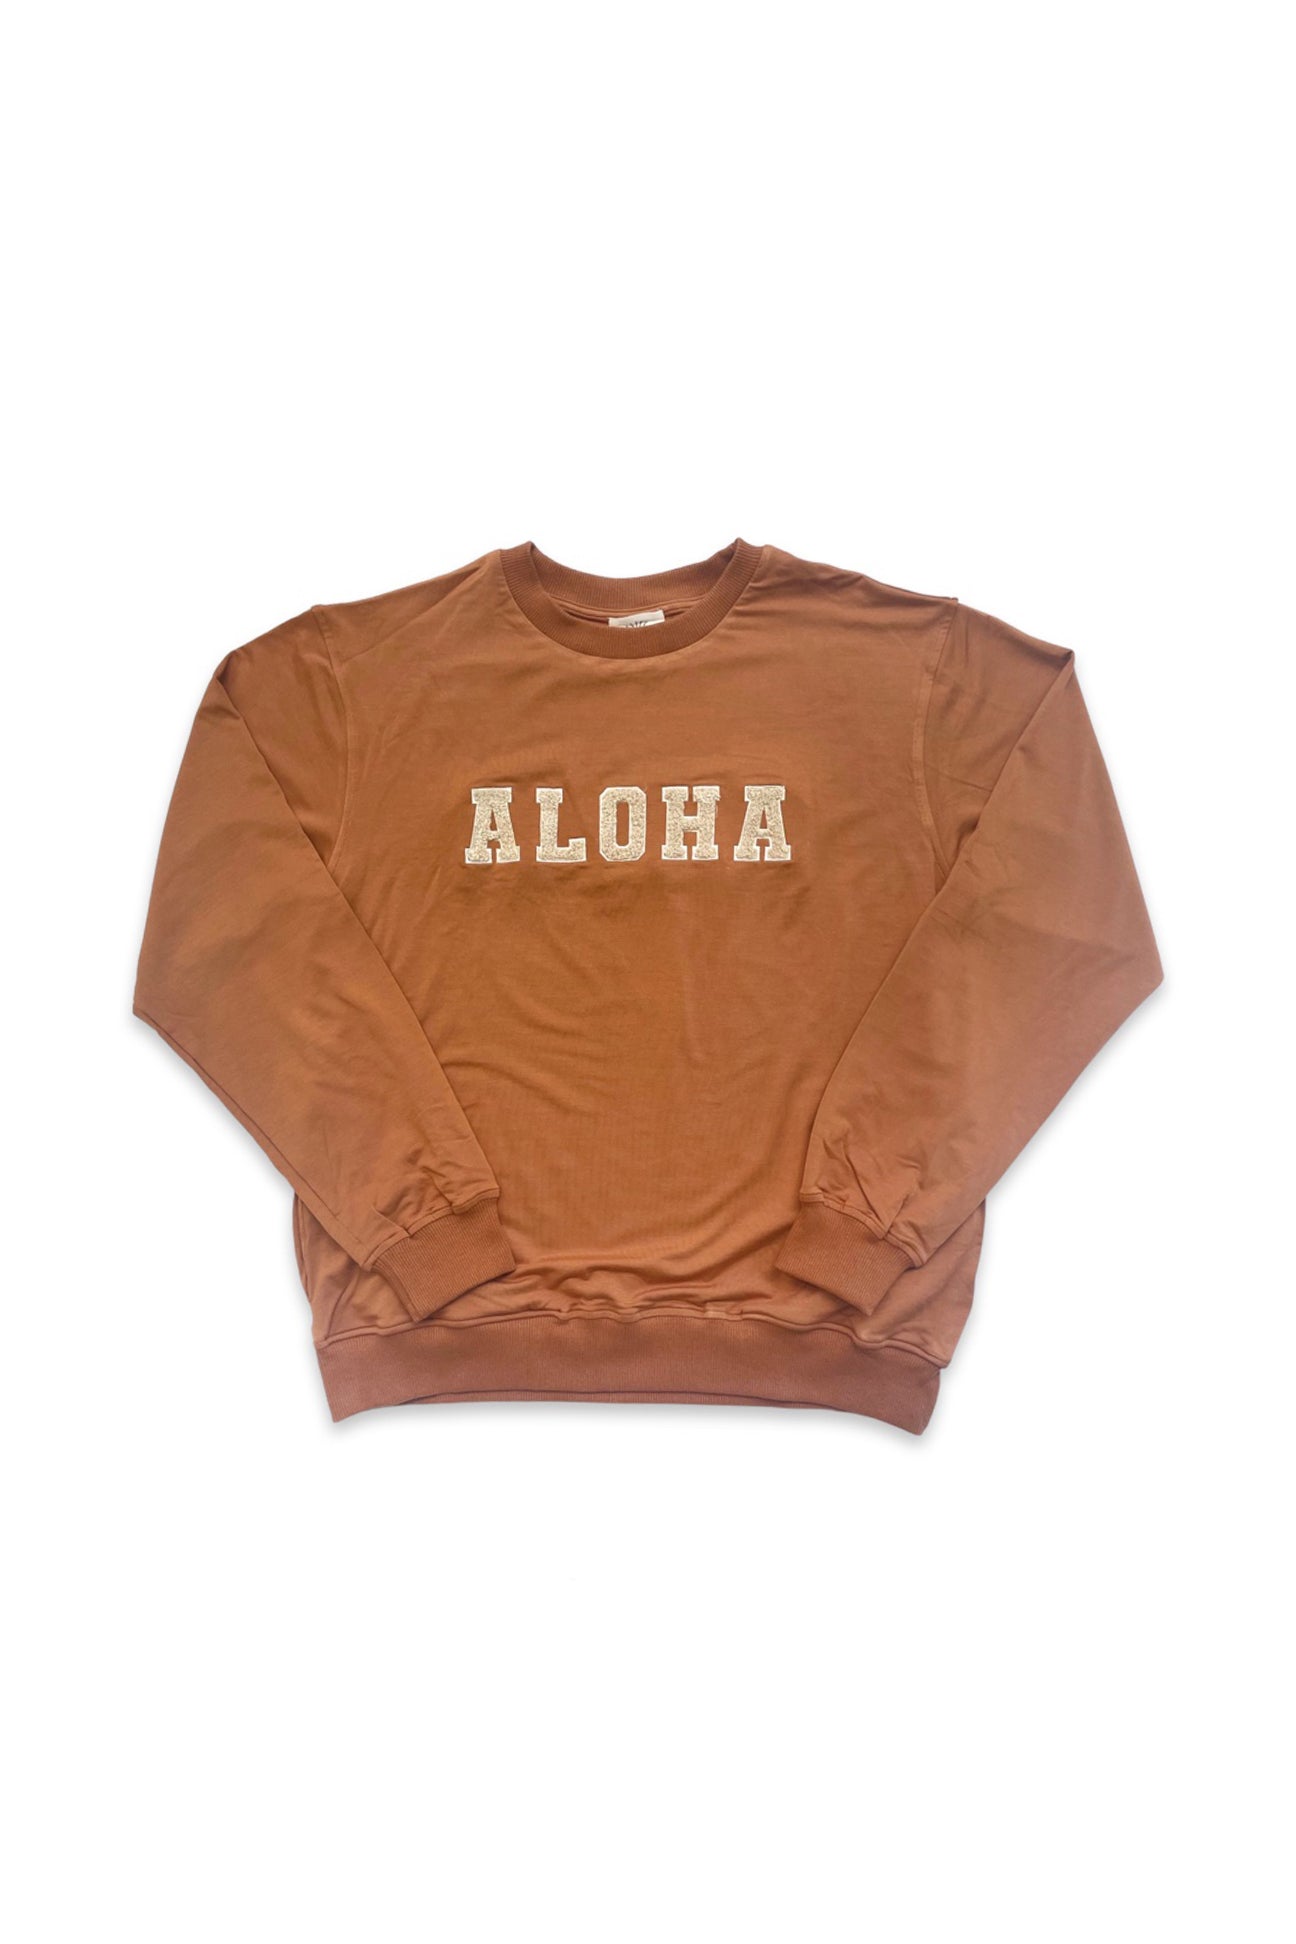 Adult ALOHA Sweatshirt - Sunset